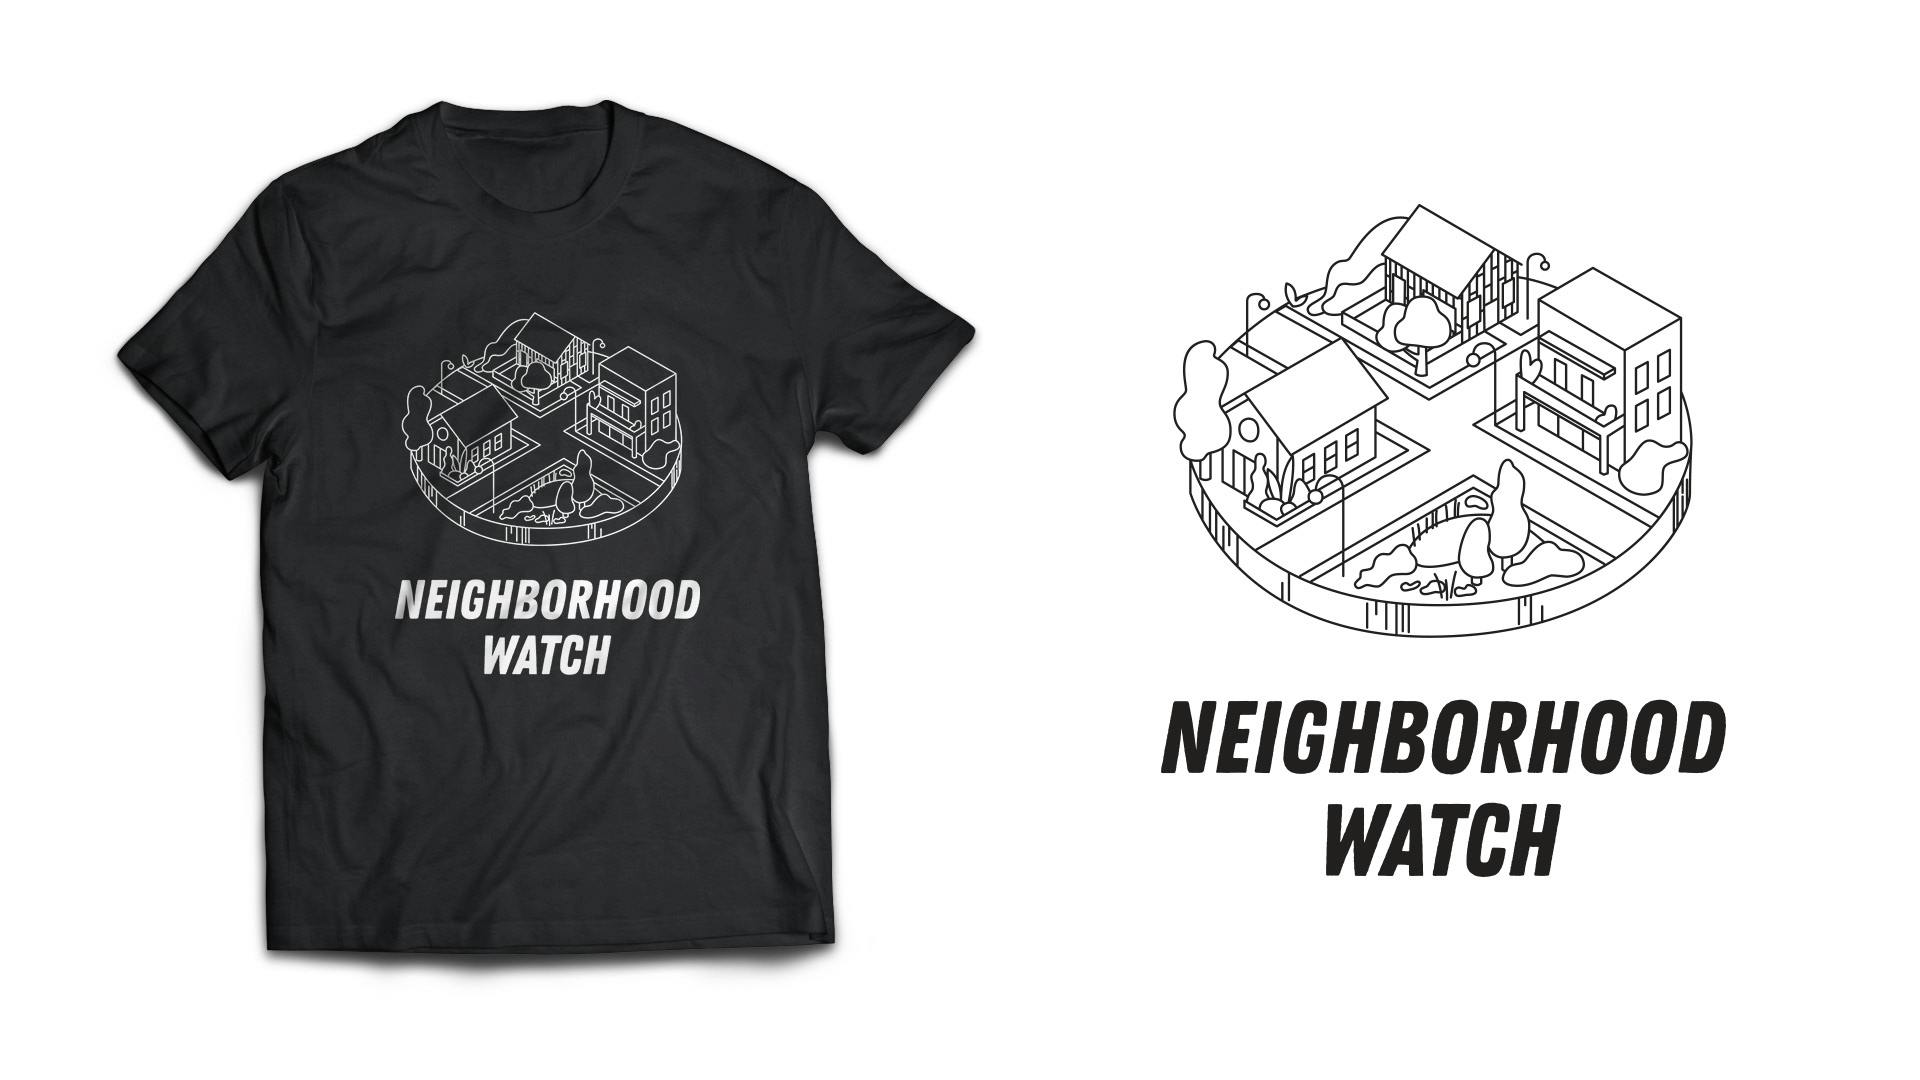 Neighborhood Watch tshirt